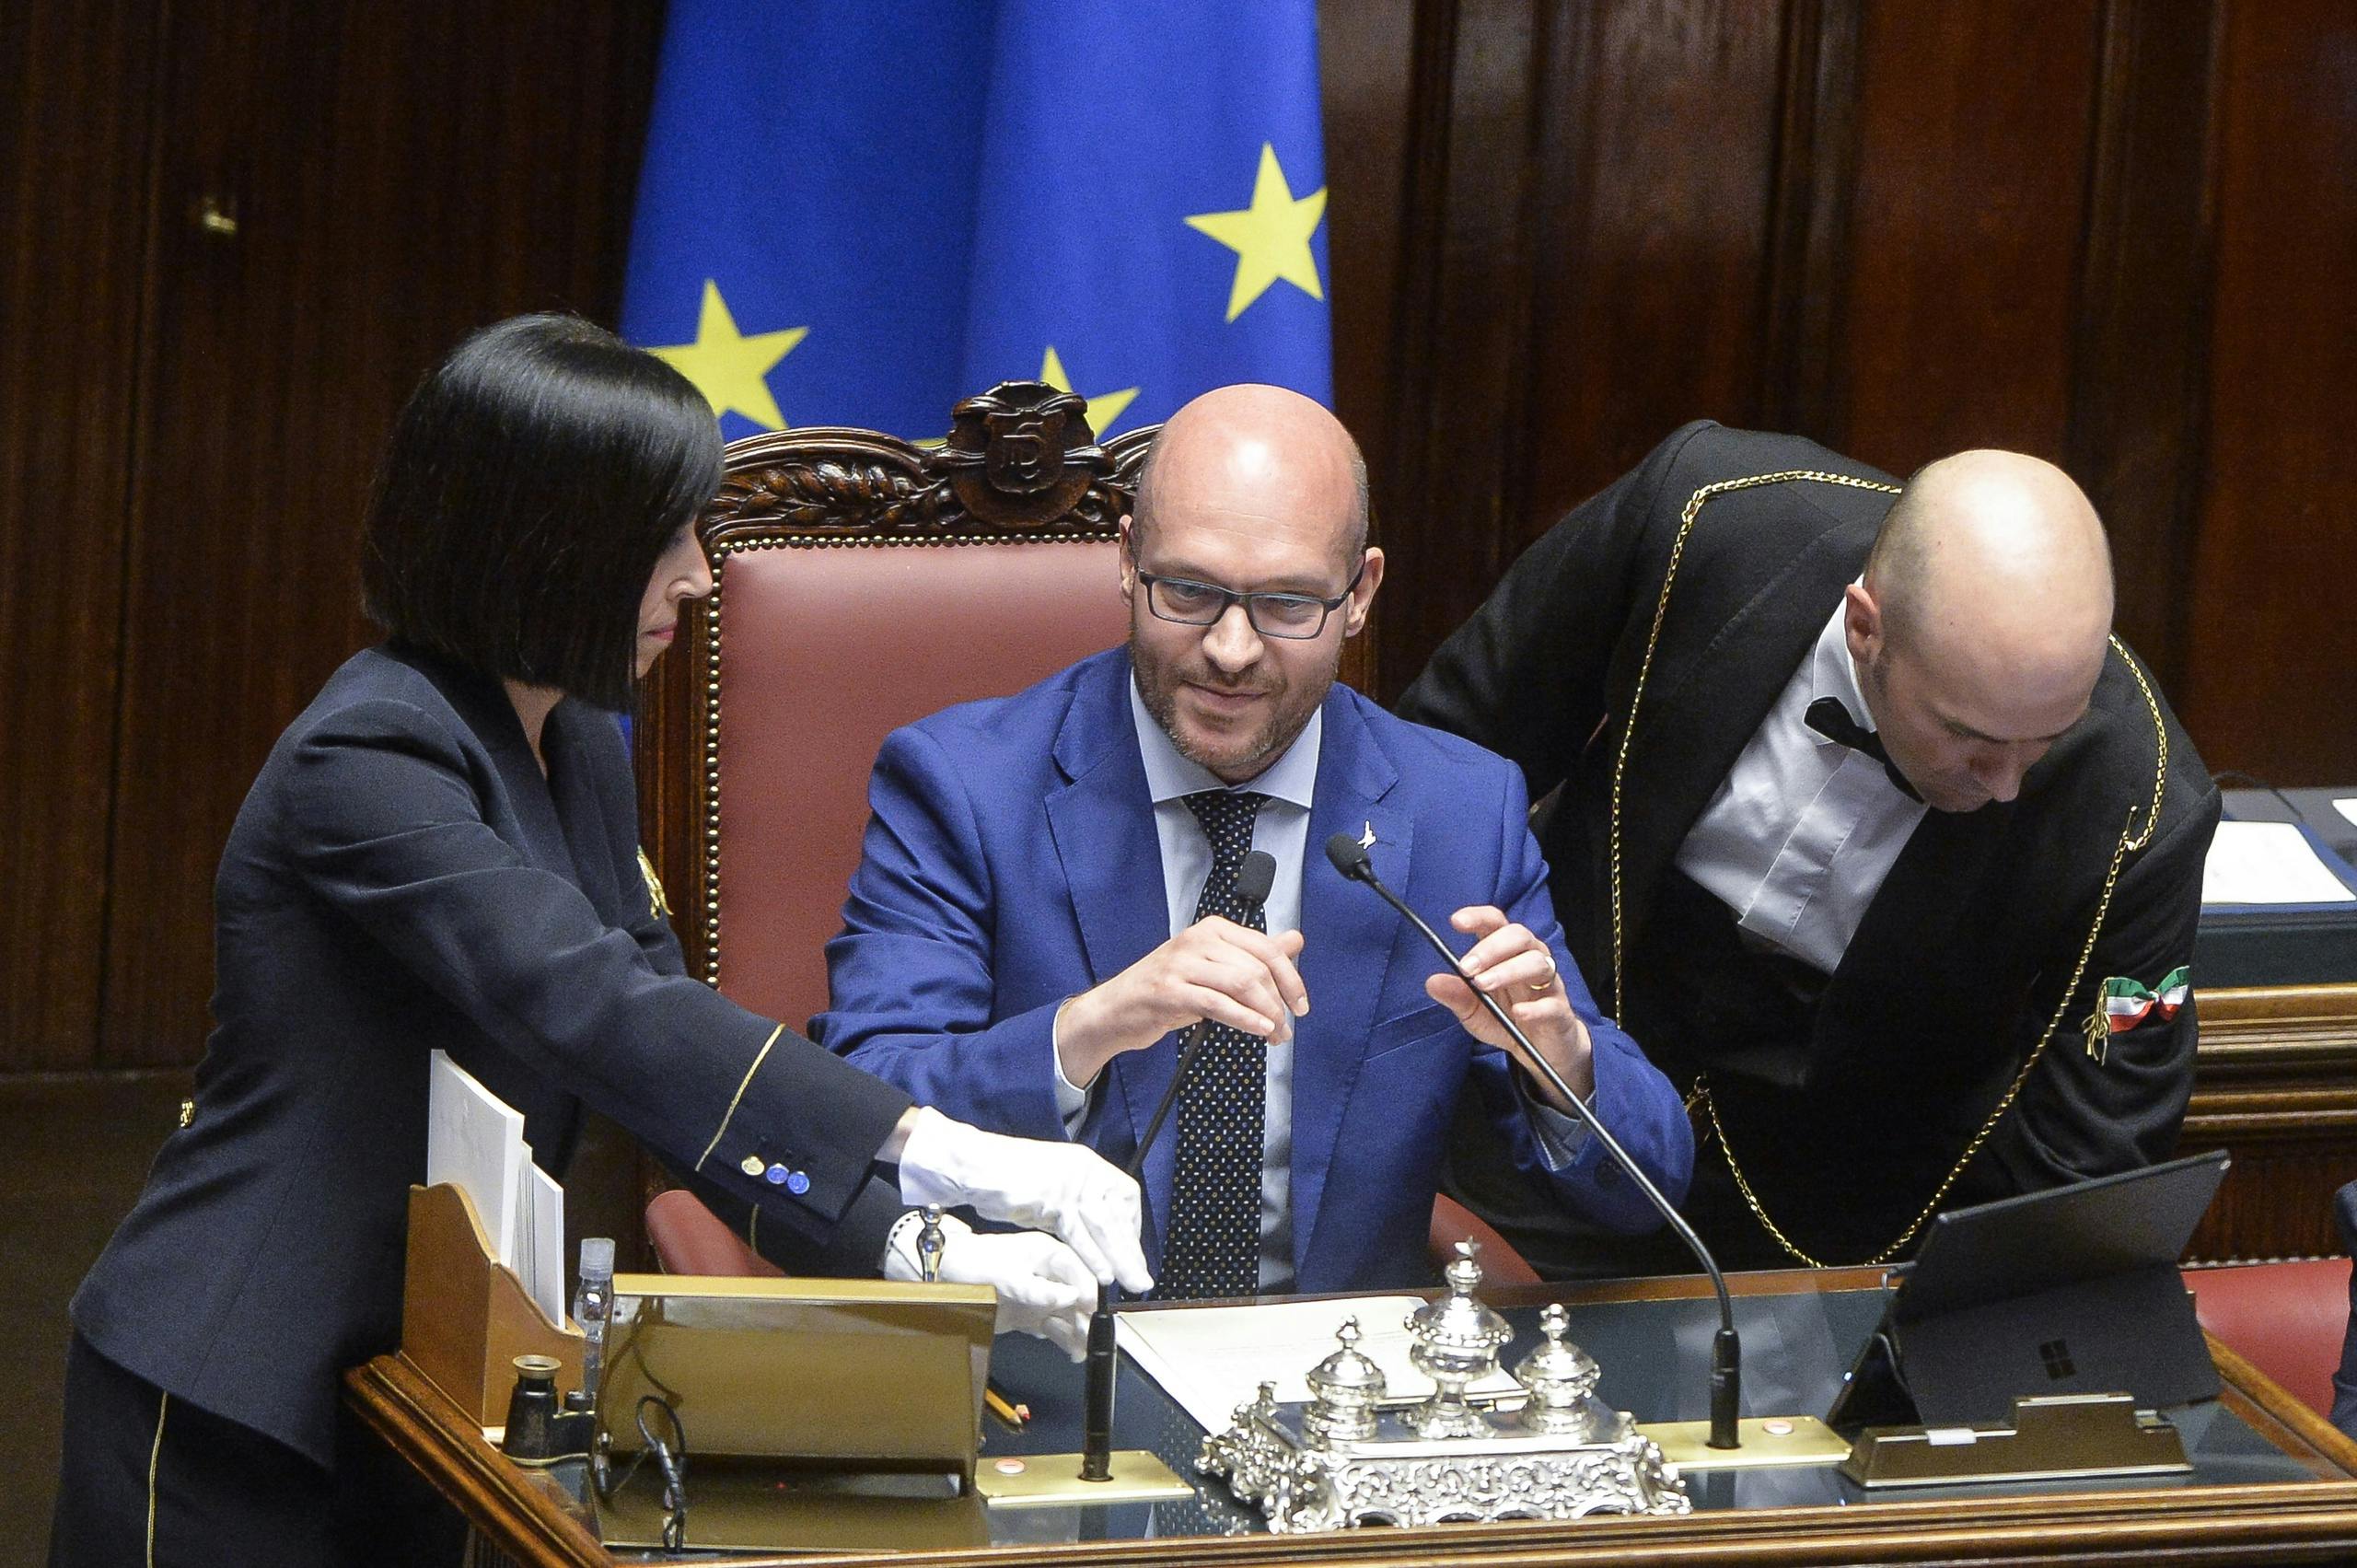 La Camera bassa italiana elegge presidente il politico di estrema destra